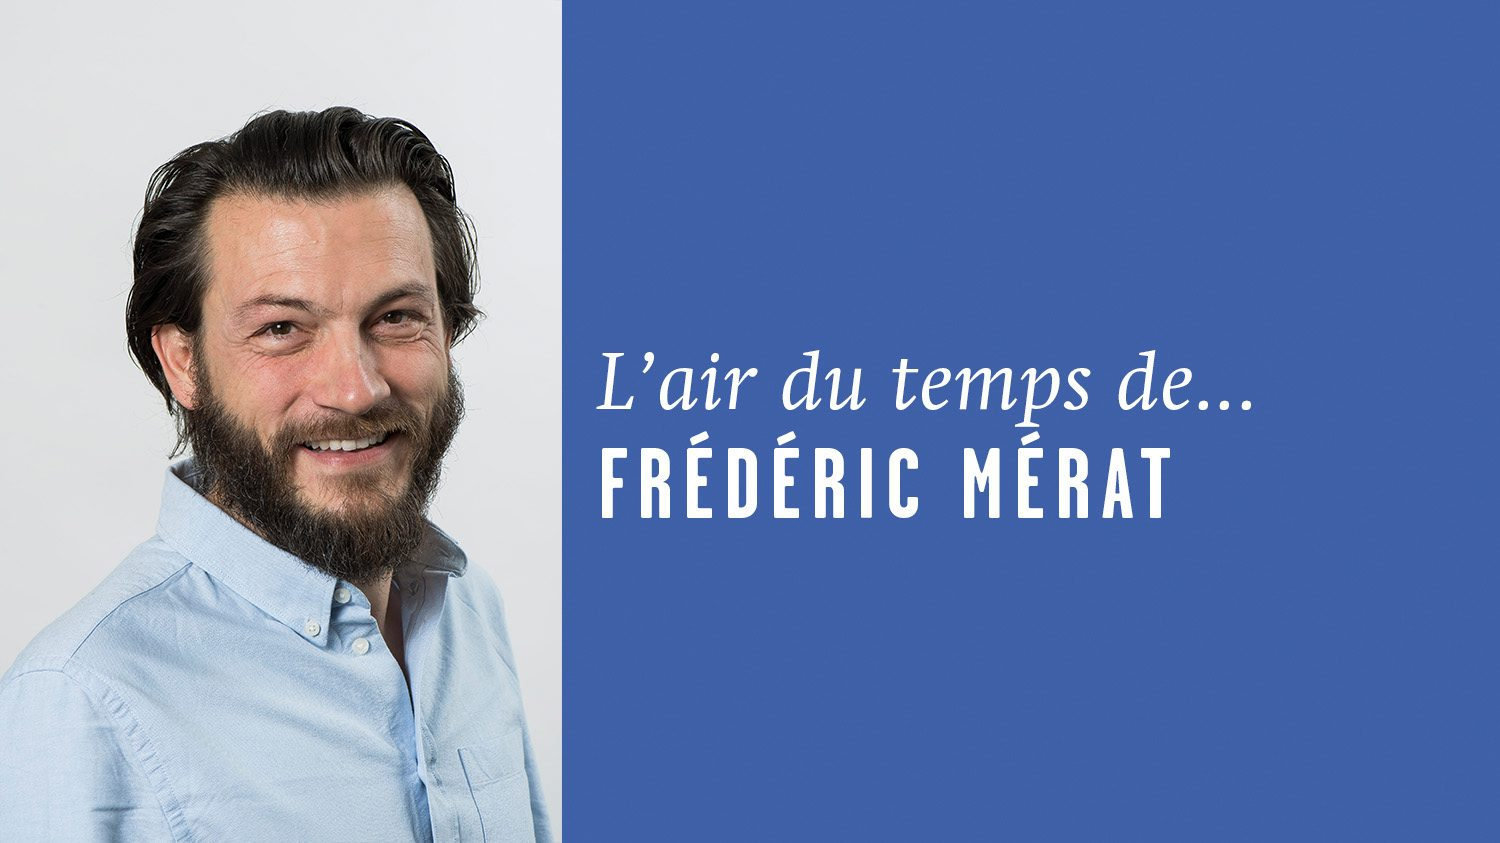 AirDutemps-FredericMerat (2)